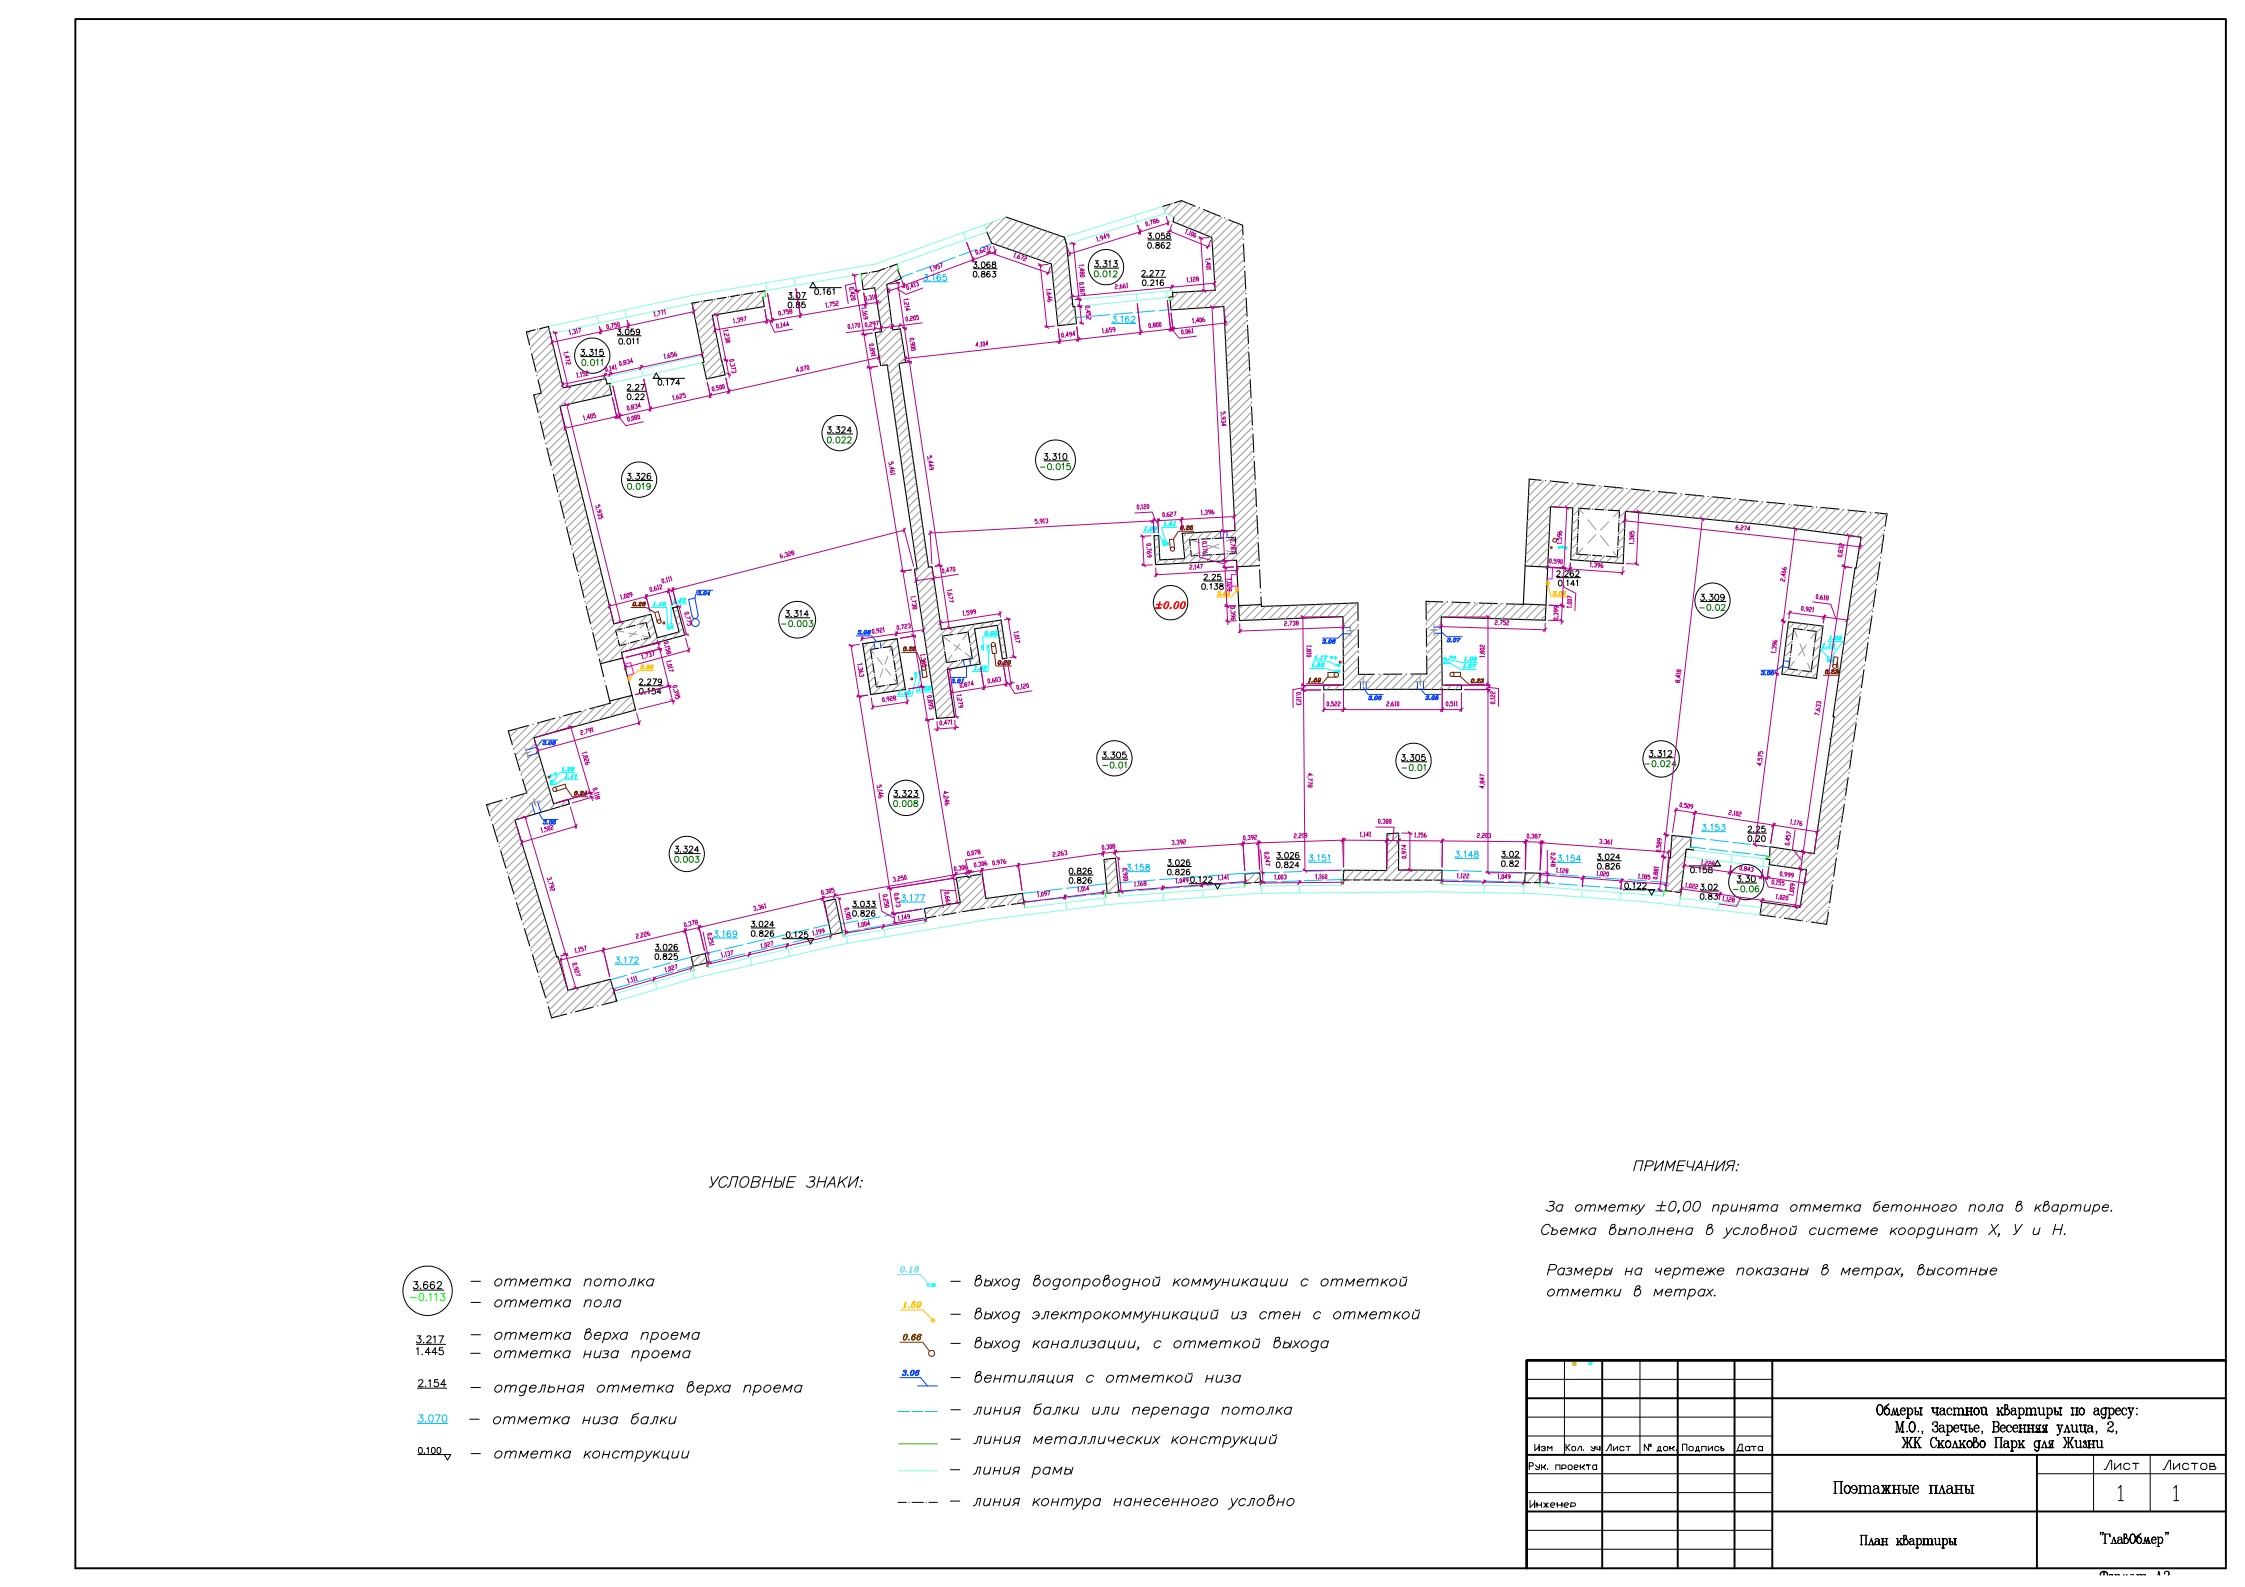 2. Обмерный план квартиры с помощью геодезии, для дизайн-проекта